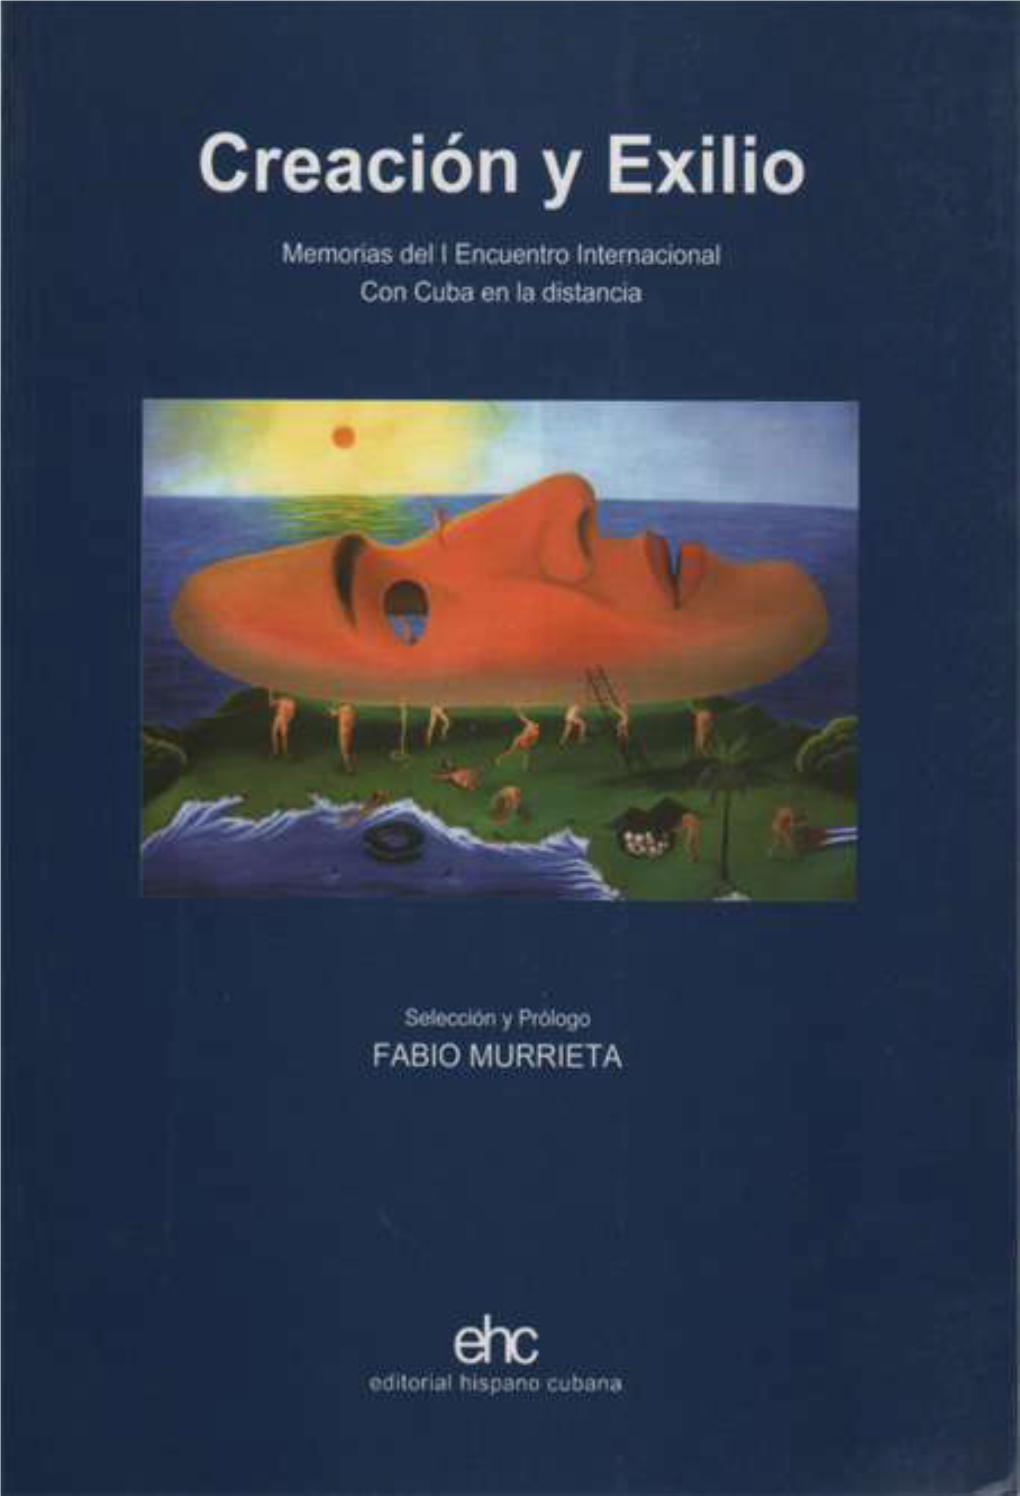 Libros EHC: Fabio Murrieta